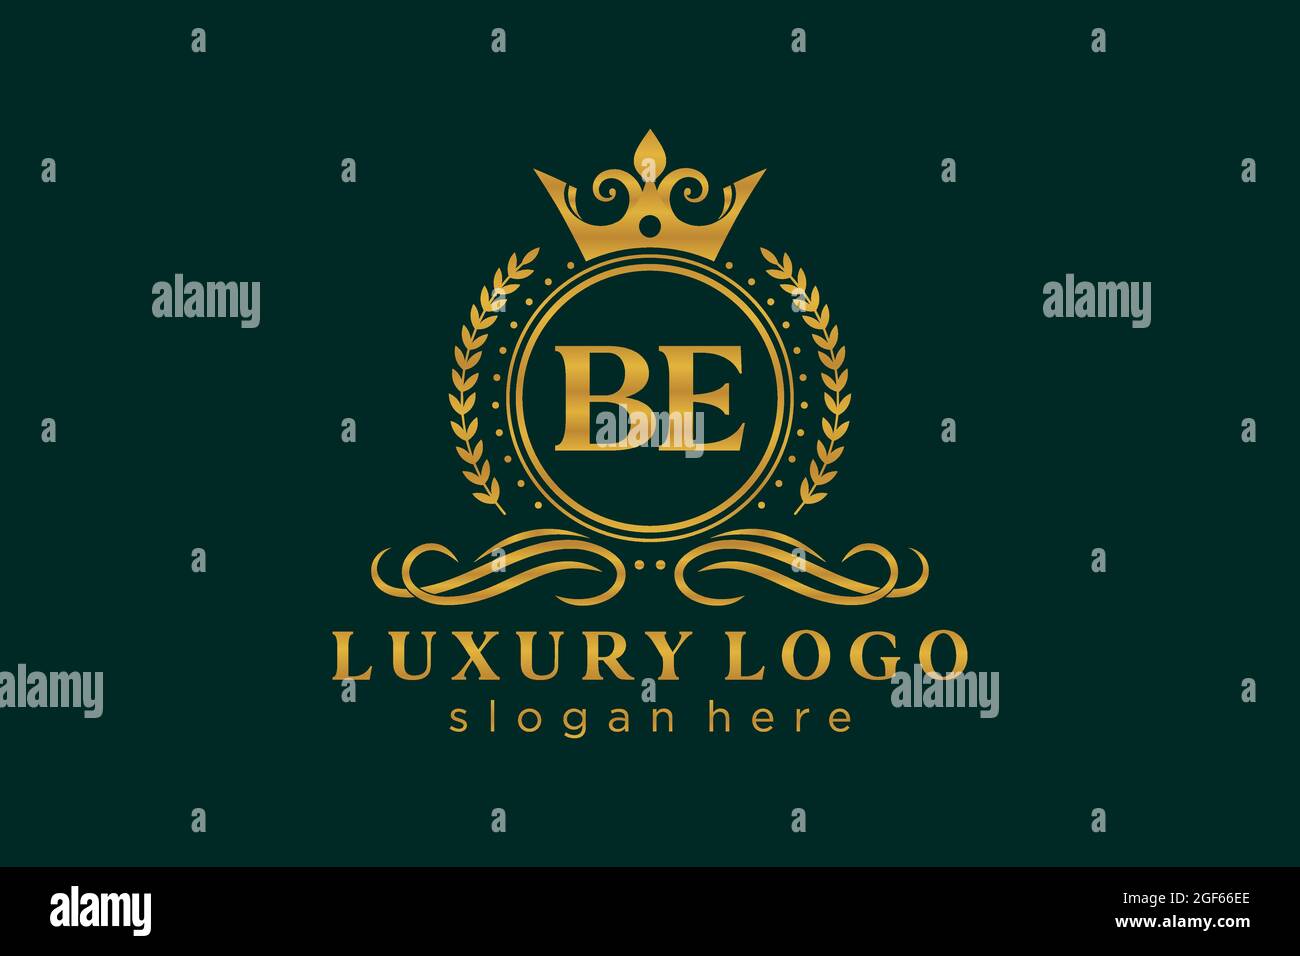 BE Letter Royal Luxury Logo Vorlage in Vektorgrafik für Restaurant, Royalty, Boutique, Cafe, Hotel, Heraldisch, Schmuck, Mode und andere Vektor illustrr Stock Vektor